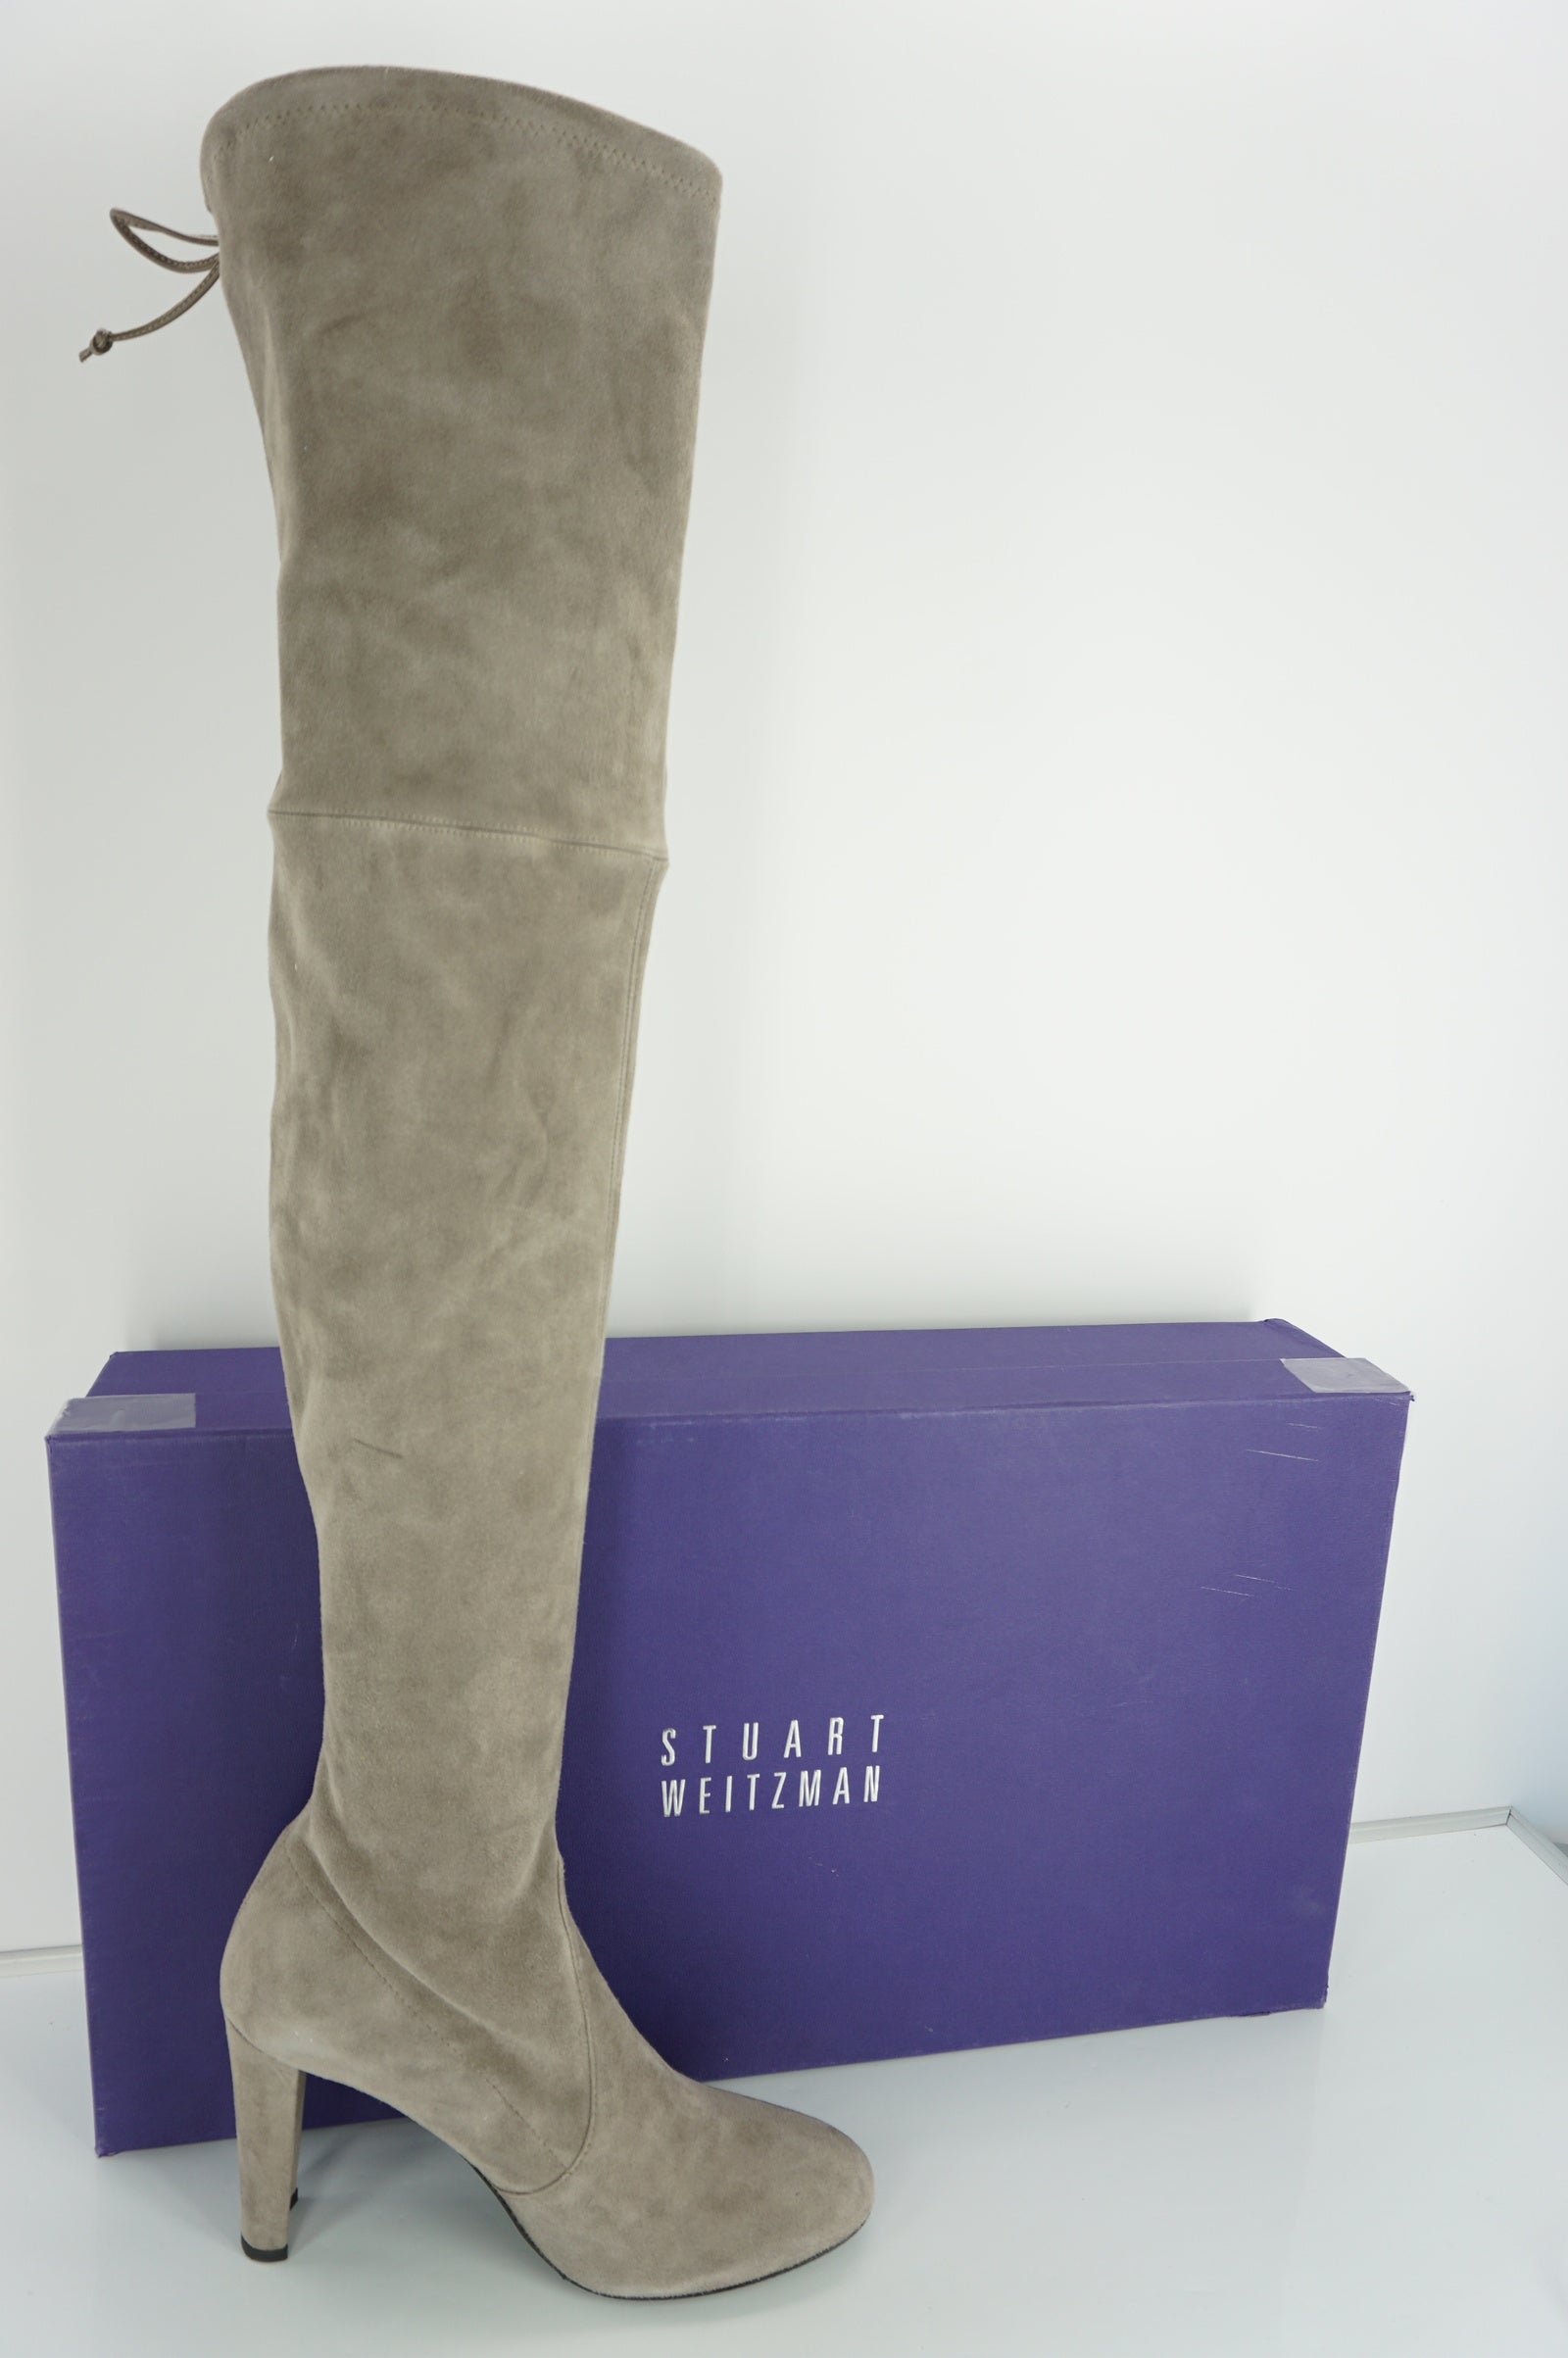 Stuart Weitzman Highland OTK Grey Suede boots SZ 10.5 NIB Thigh $790